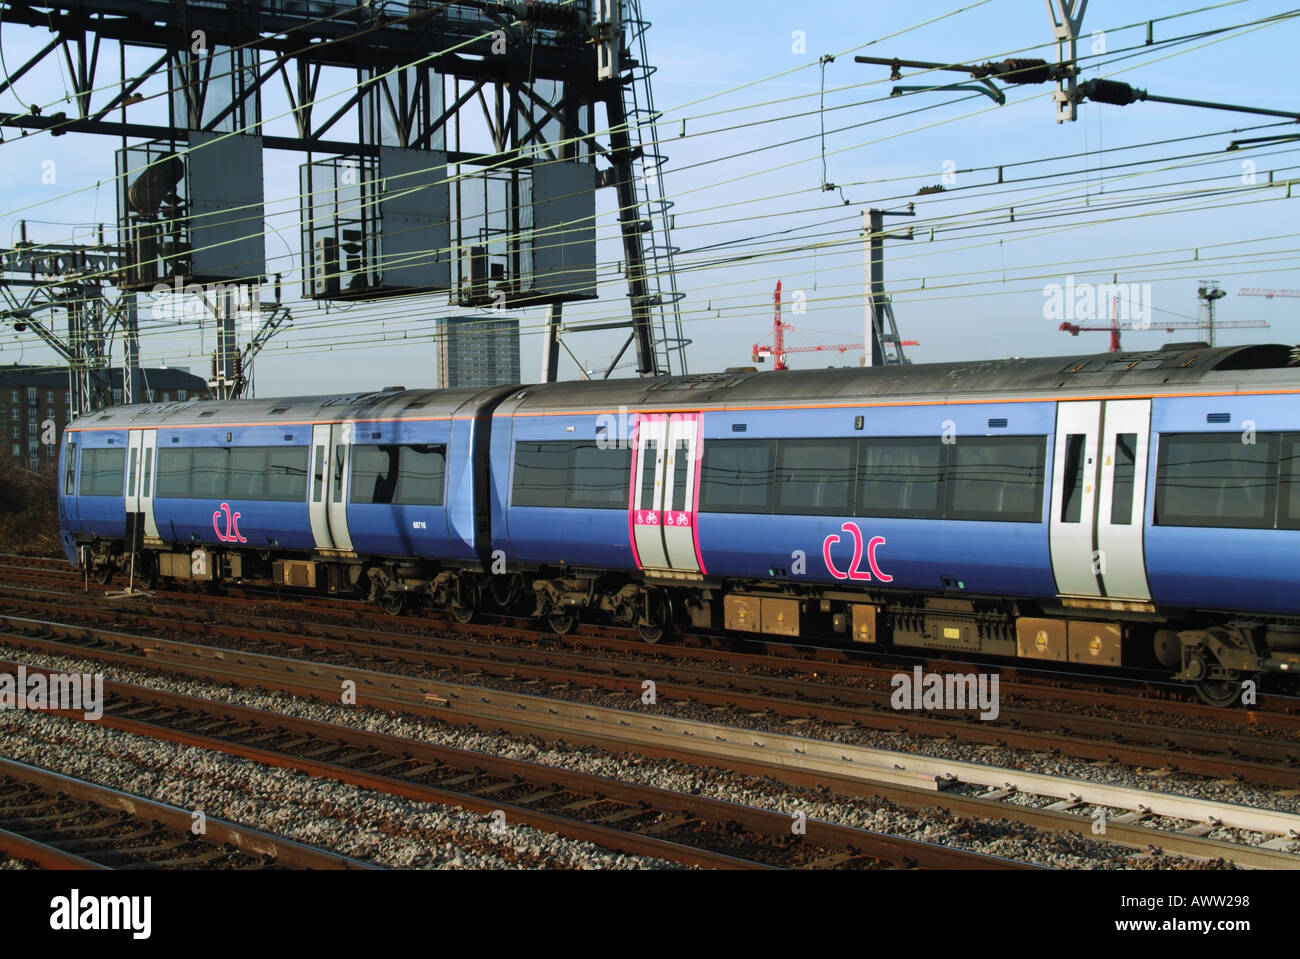 C2C Personenzug Kutschen und elektrifizierten Oberleitung auf Network Rail Track Stratford Newham East London England Großbritannien Stockfoto